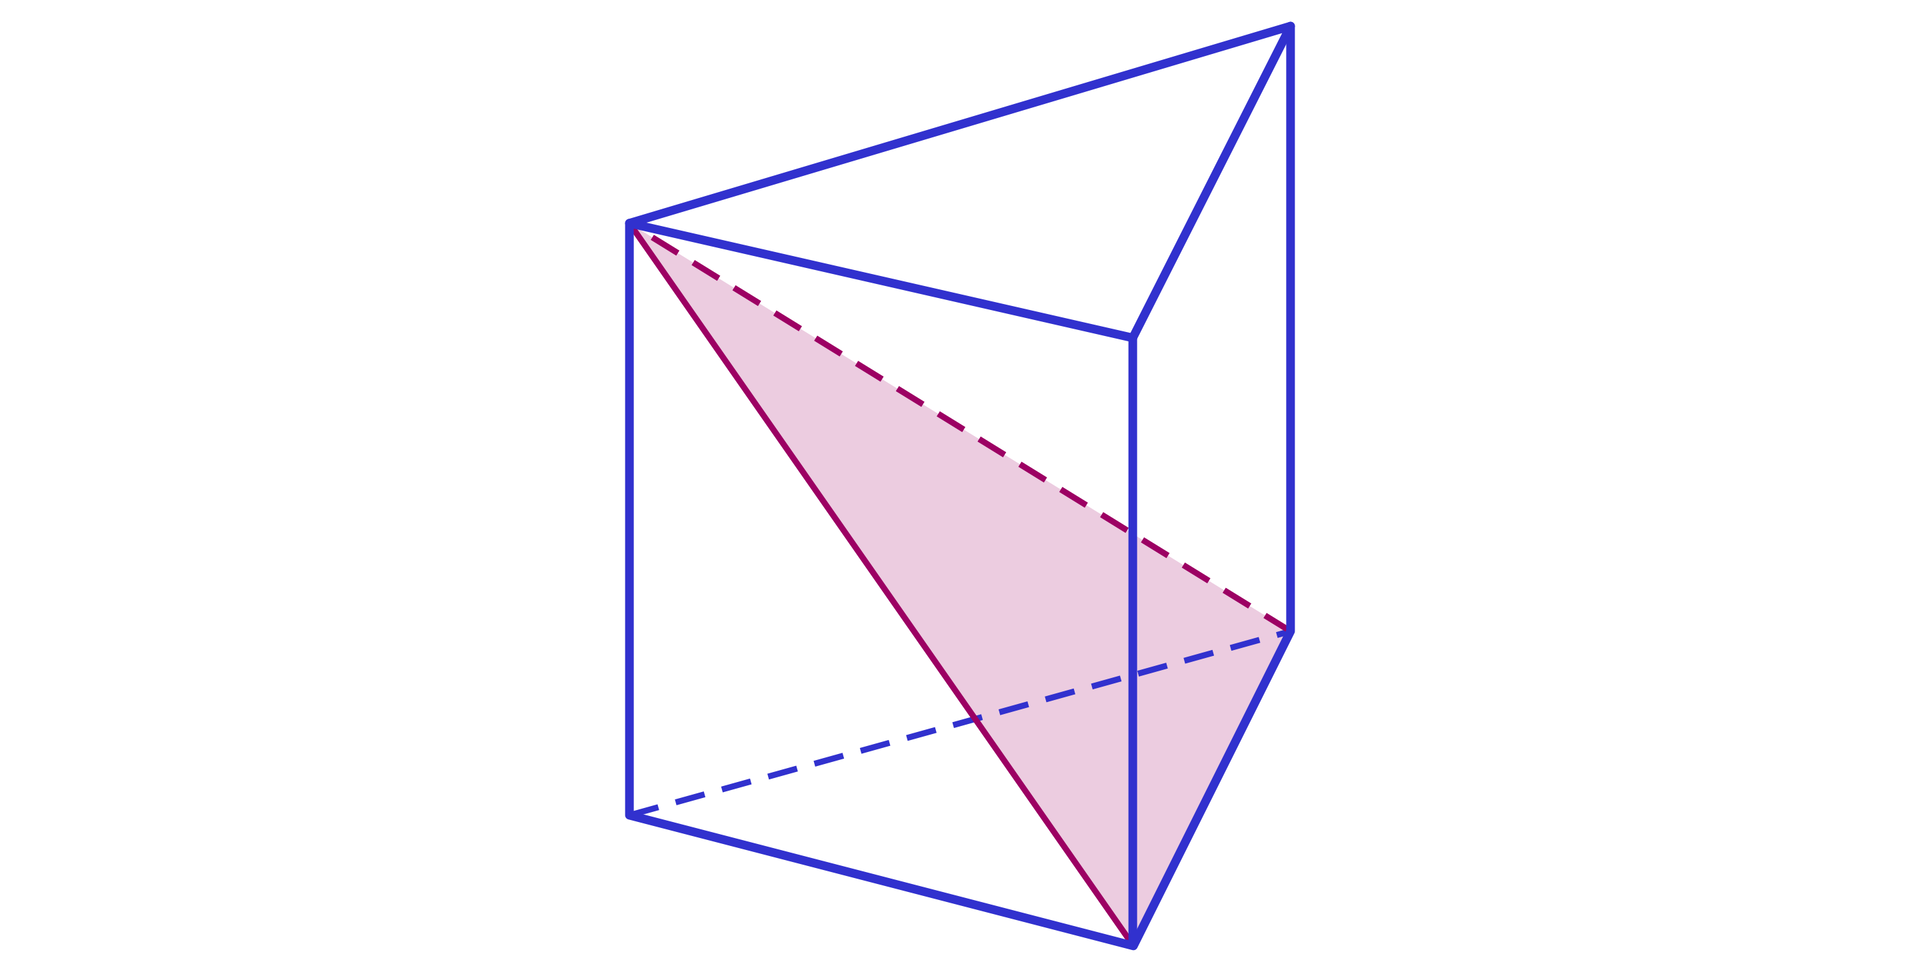 Ilustracja przedstawia graniastosłup prawidłowy trójkątny. W graniastosłupie zaznaczono płaszczyznę w kształcie trójkąta. Jeden z boków trójkąta pokrywa się z krawędzią dolnej podstawy, pozostałe boki leżą w płaszczyźnie ścian bocznych, a łączący je wierzchołek leży w wierzchołku górnej podstawy naprzeciwległym do boku będącego krawędzią podstawy.